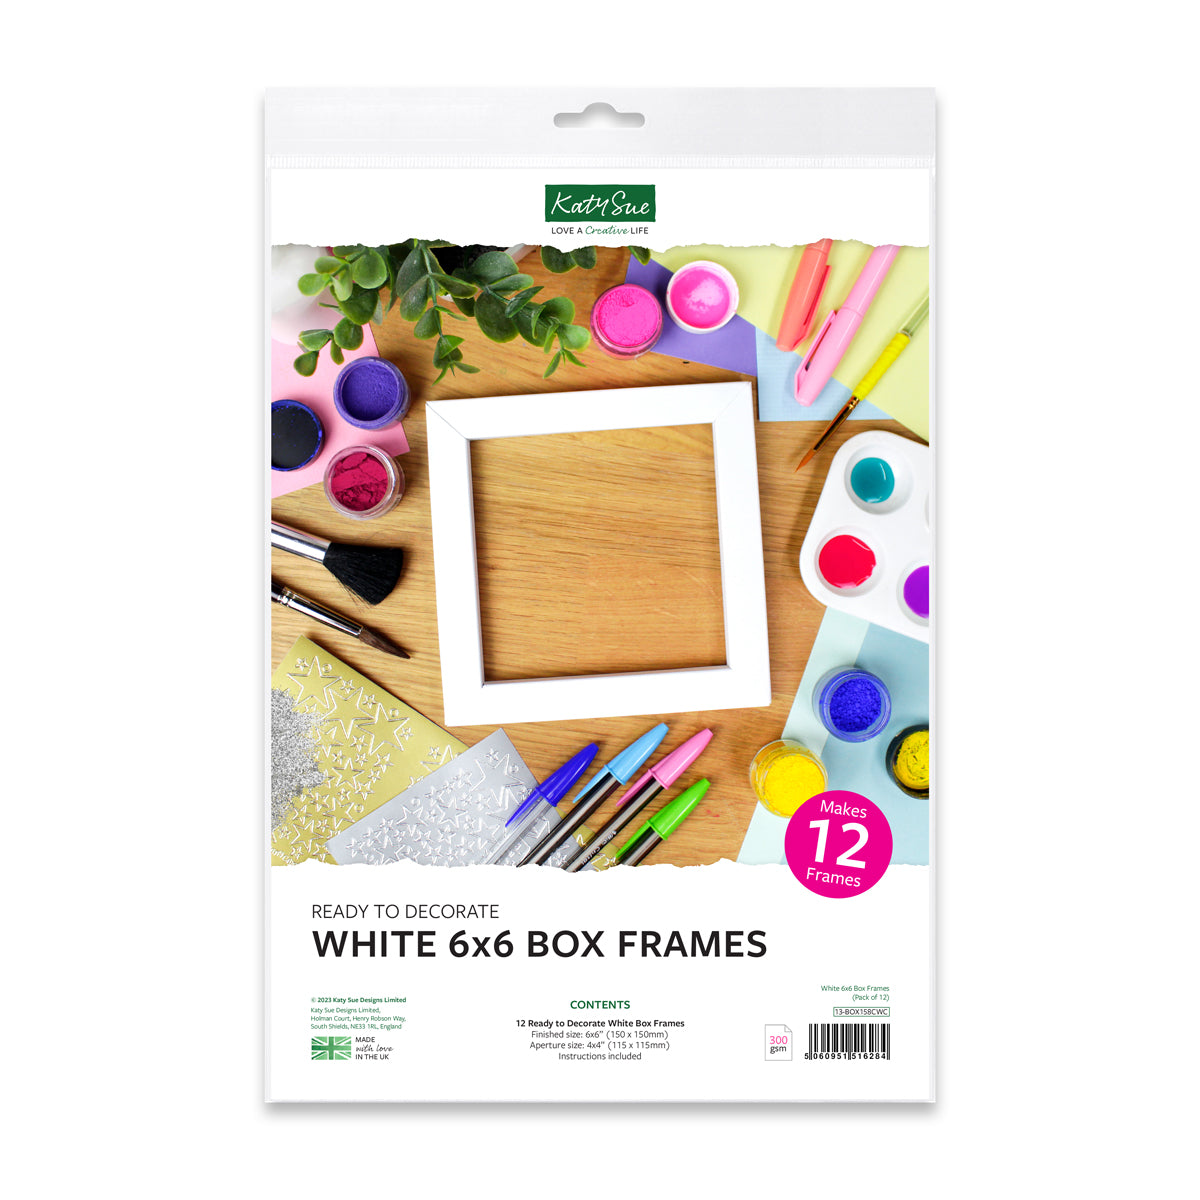 White 6x6 Box Frames, pack of 12